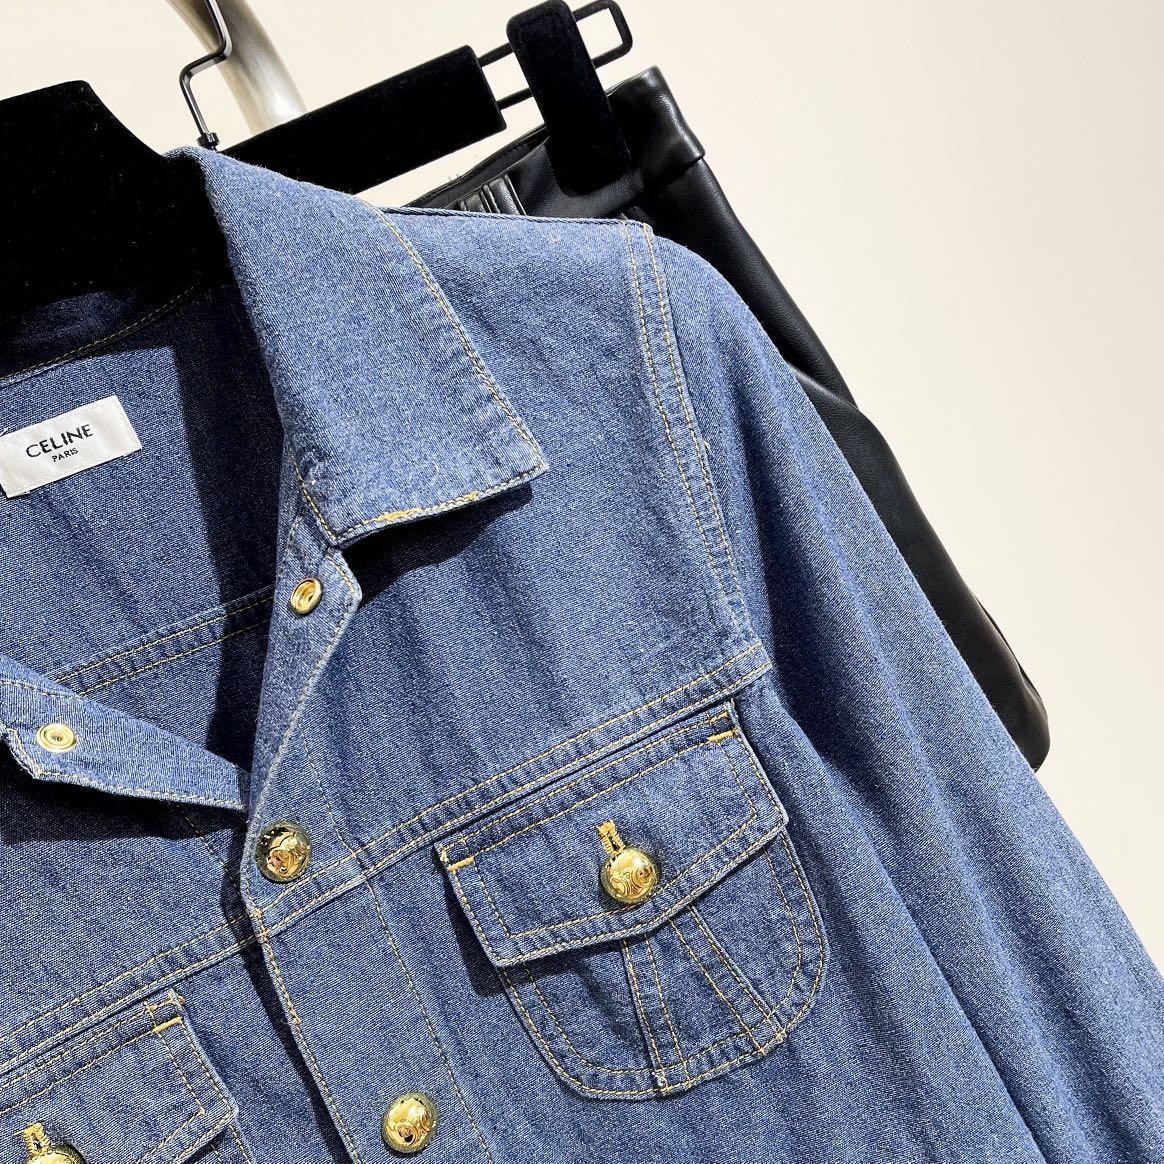 メンズ セリーヌジャケット激安通販 品質保証 トップス アウター ファッション 柔らかい シンプル デニム ブルー_3